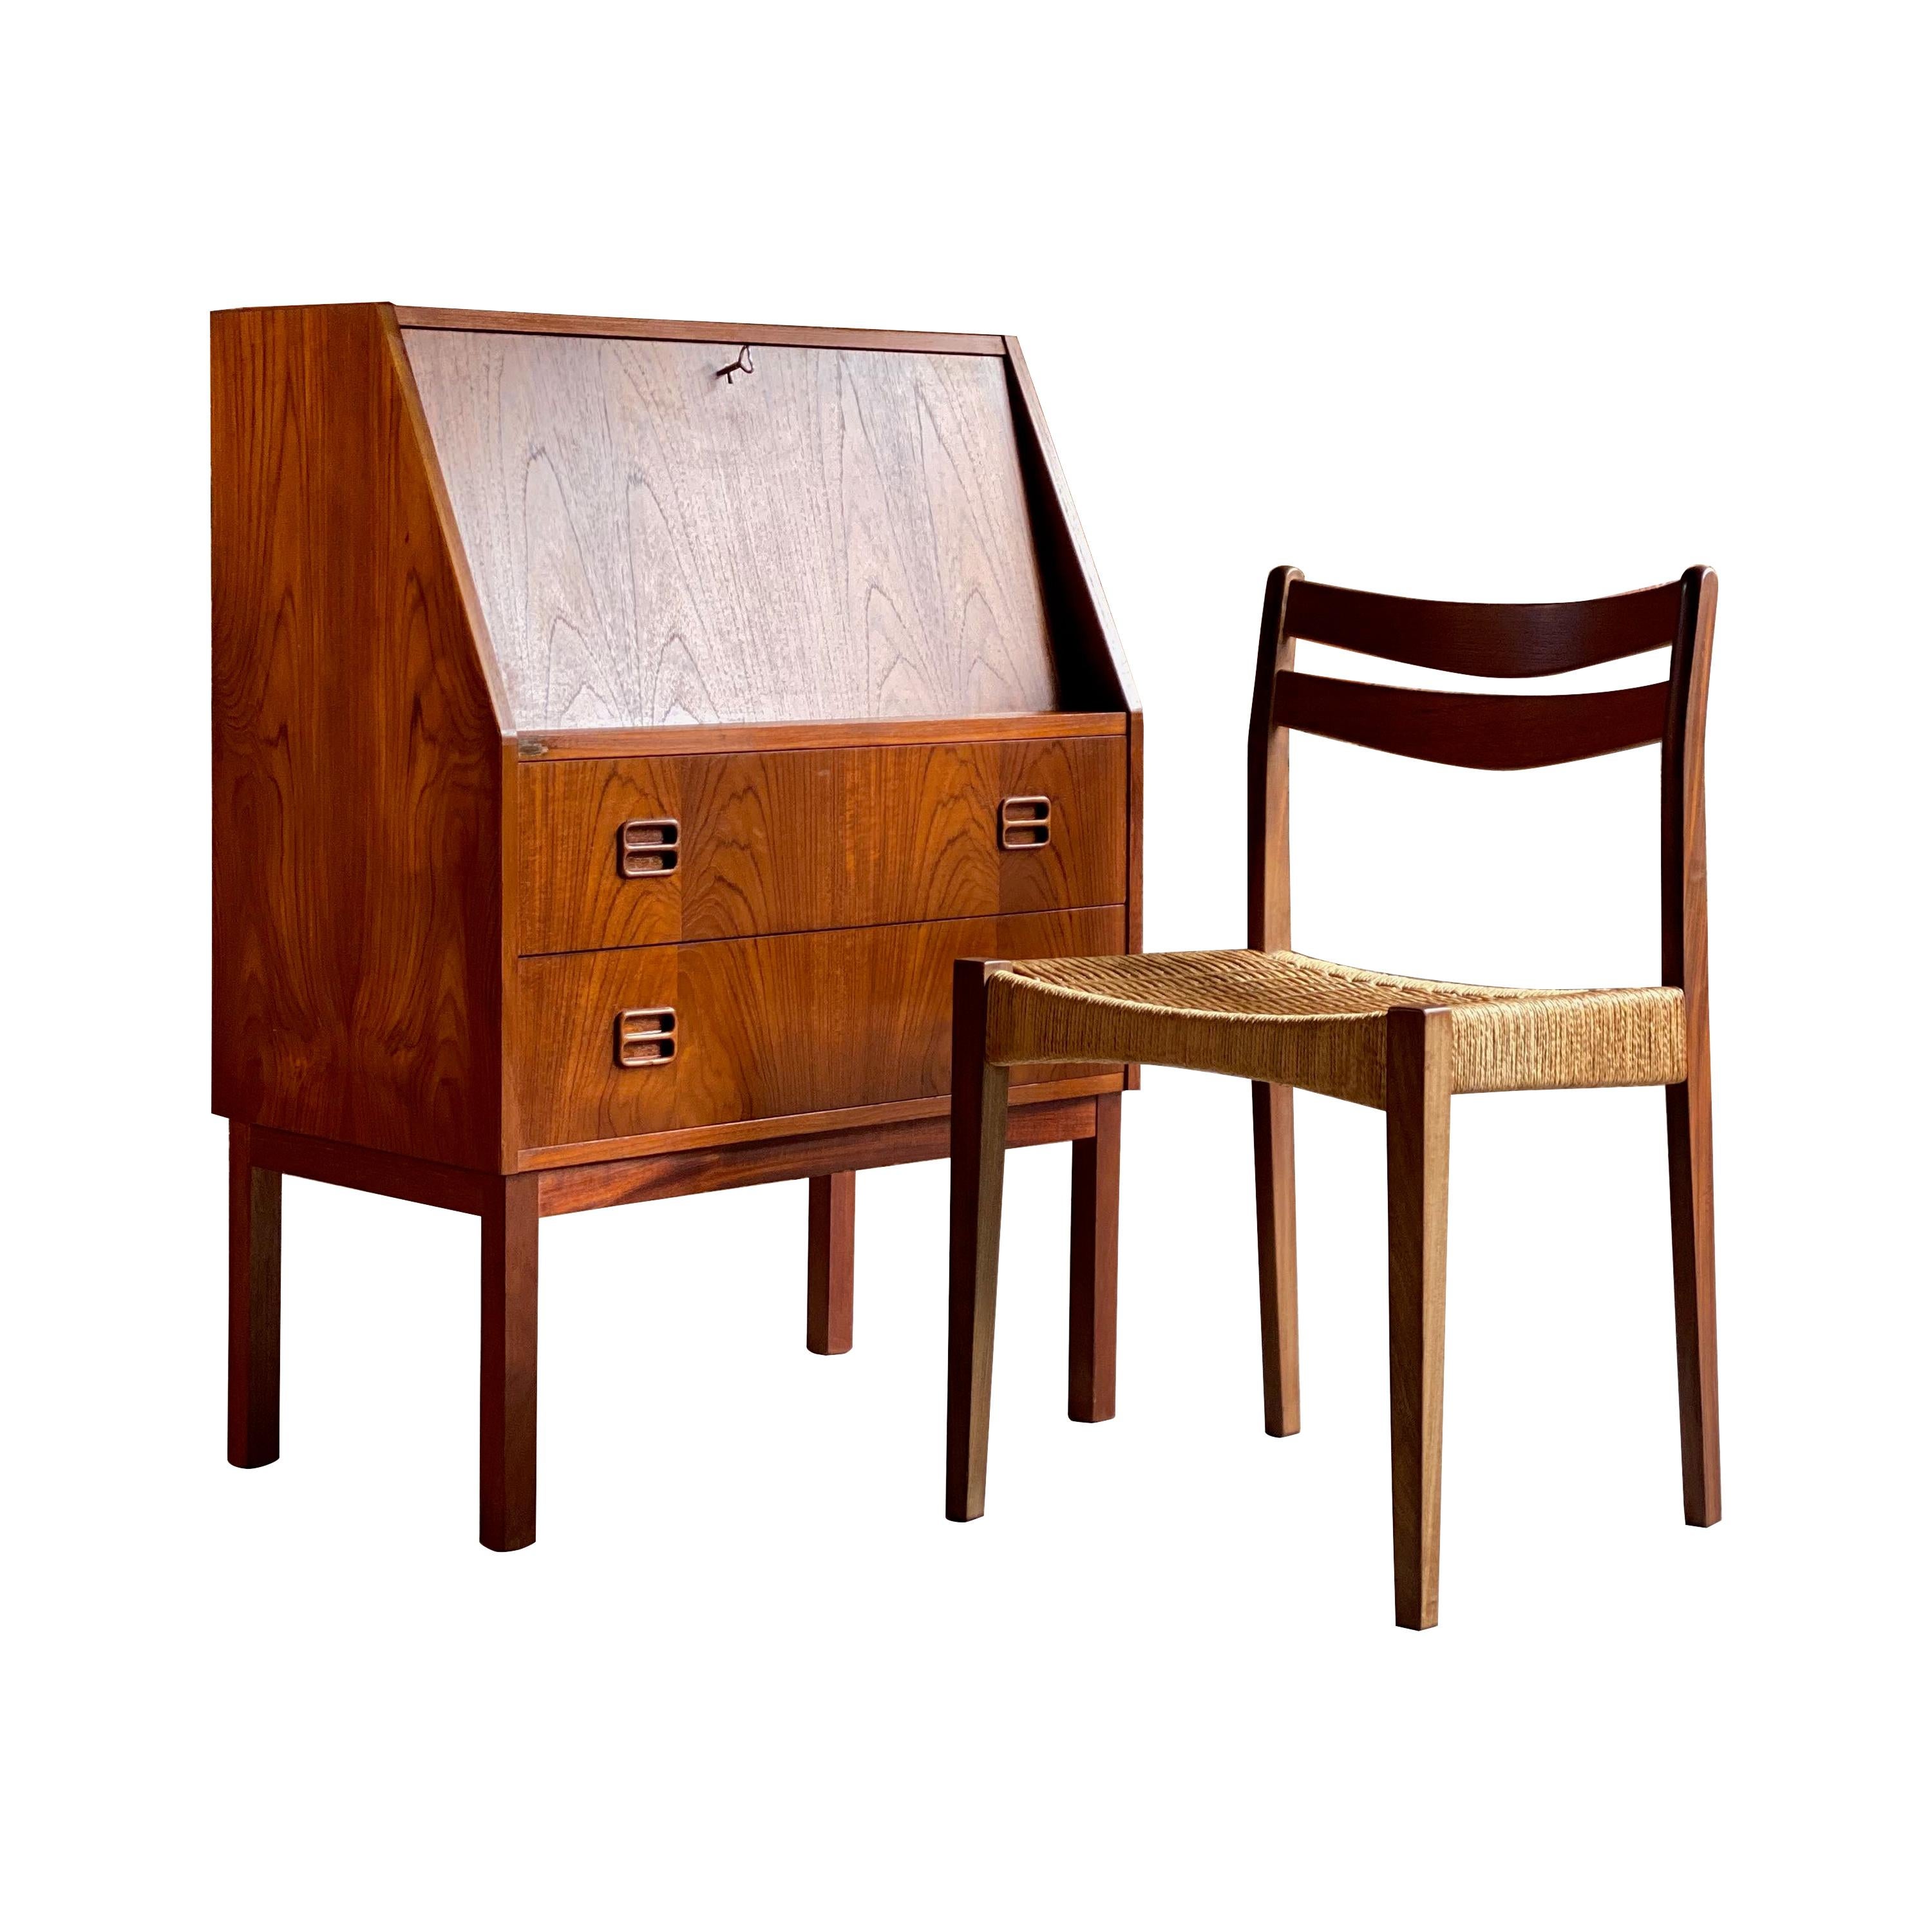 Midcentury Danish Teak Writing Bureau & Moller Style Chair, Denmark, circa 1970